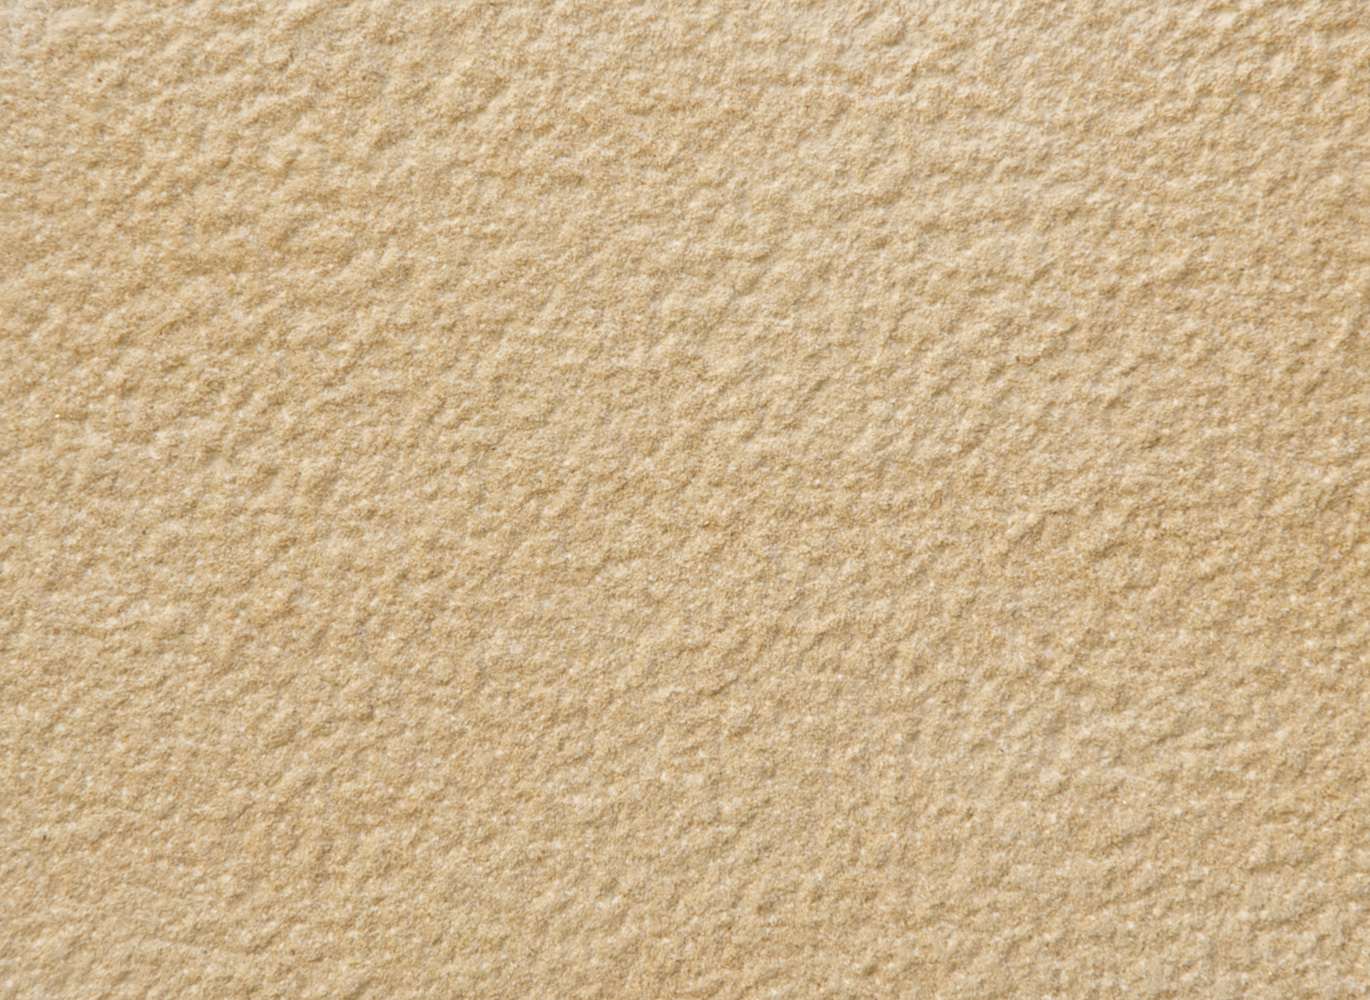 Durván pontozott felületű Crema Vereada spanyol homokkő